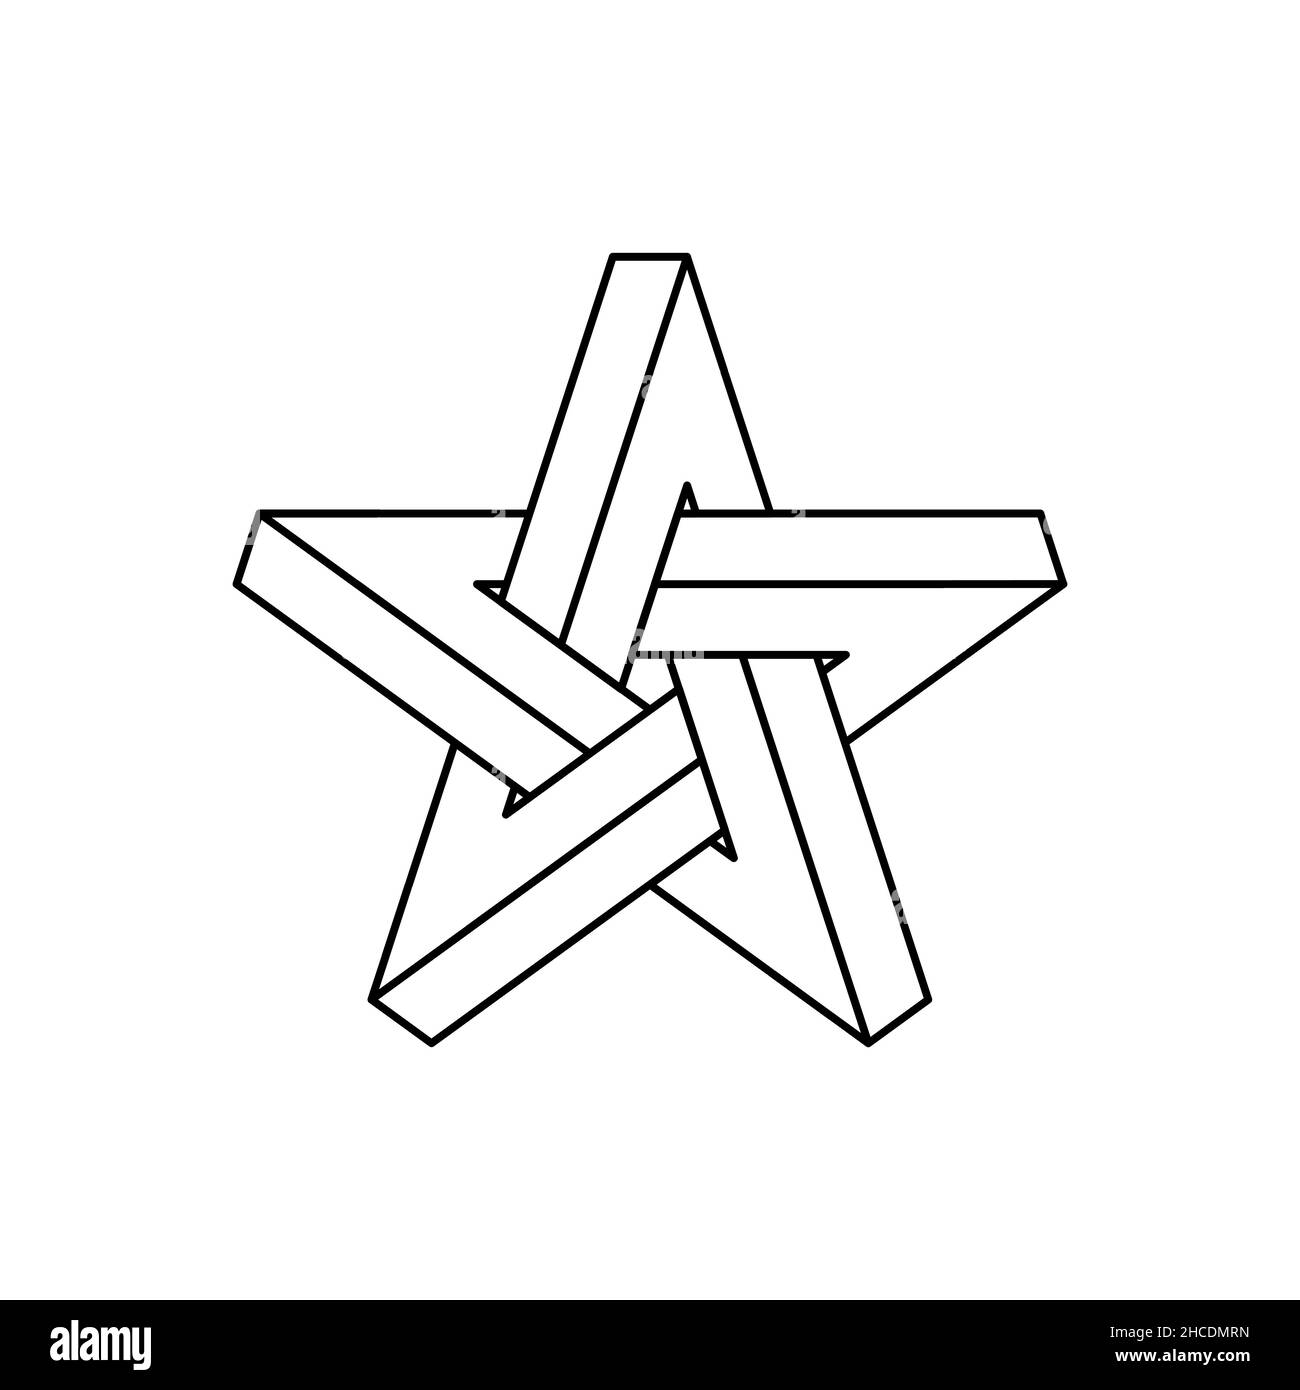 Contorno stella impossibile. Forma geometrica dell'illusione ottica. Pentagramma di forma impossibile su sfondo bianco. Segno a stella a cinque punte. Simbolo astratto. Illustrazione Vettoriale